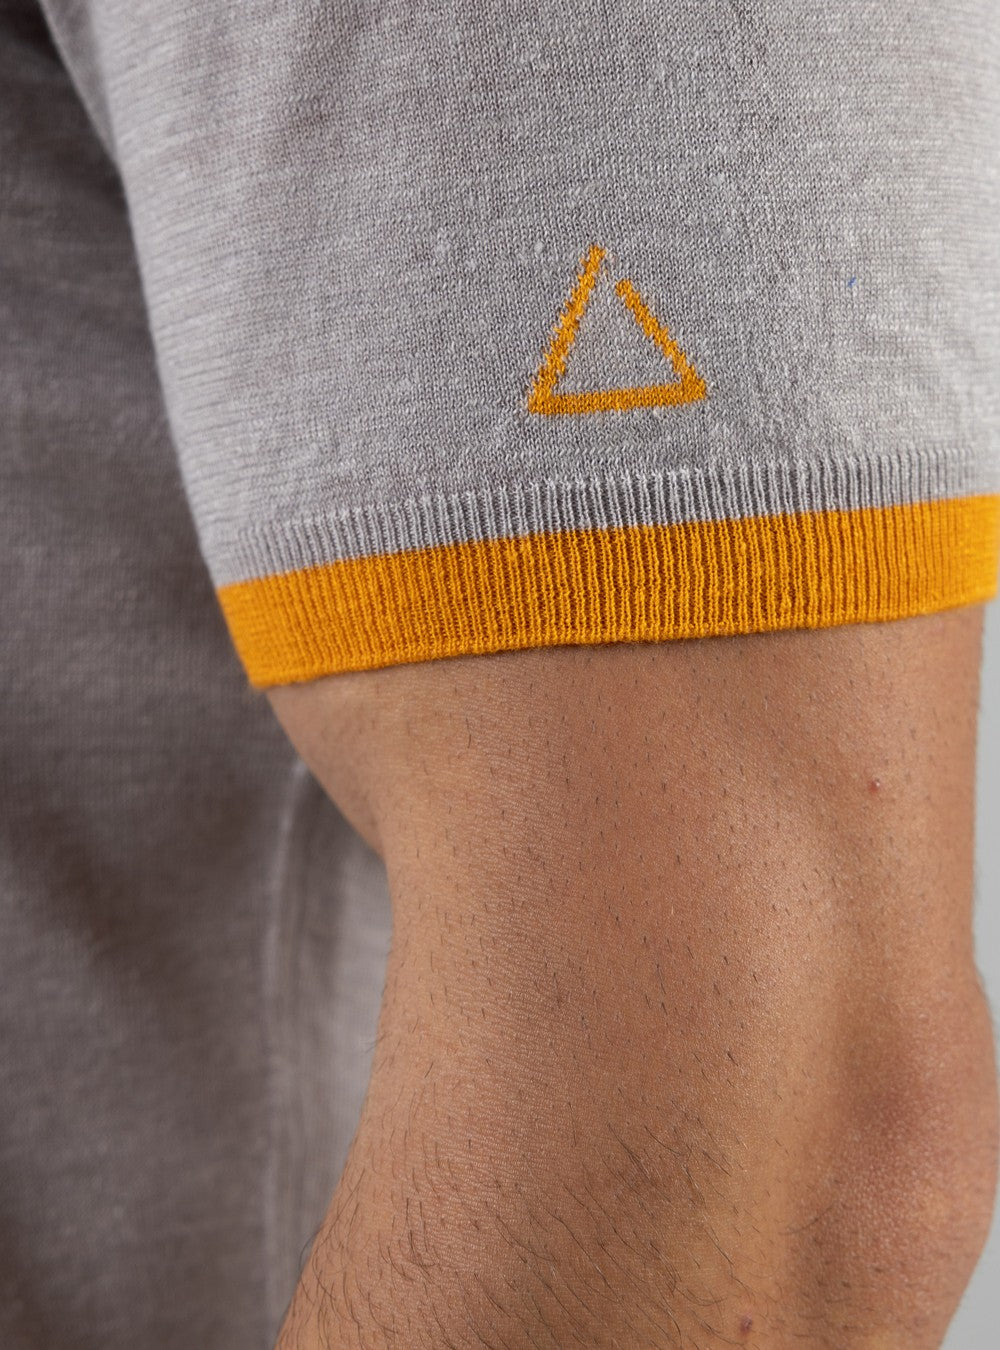 Proteus Lightweight T-Shirt in Cashmere/Linen/Silk, Sand